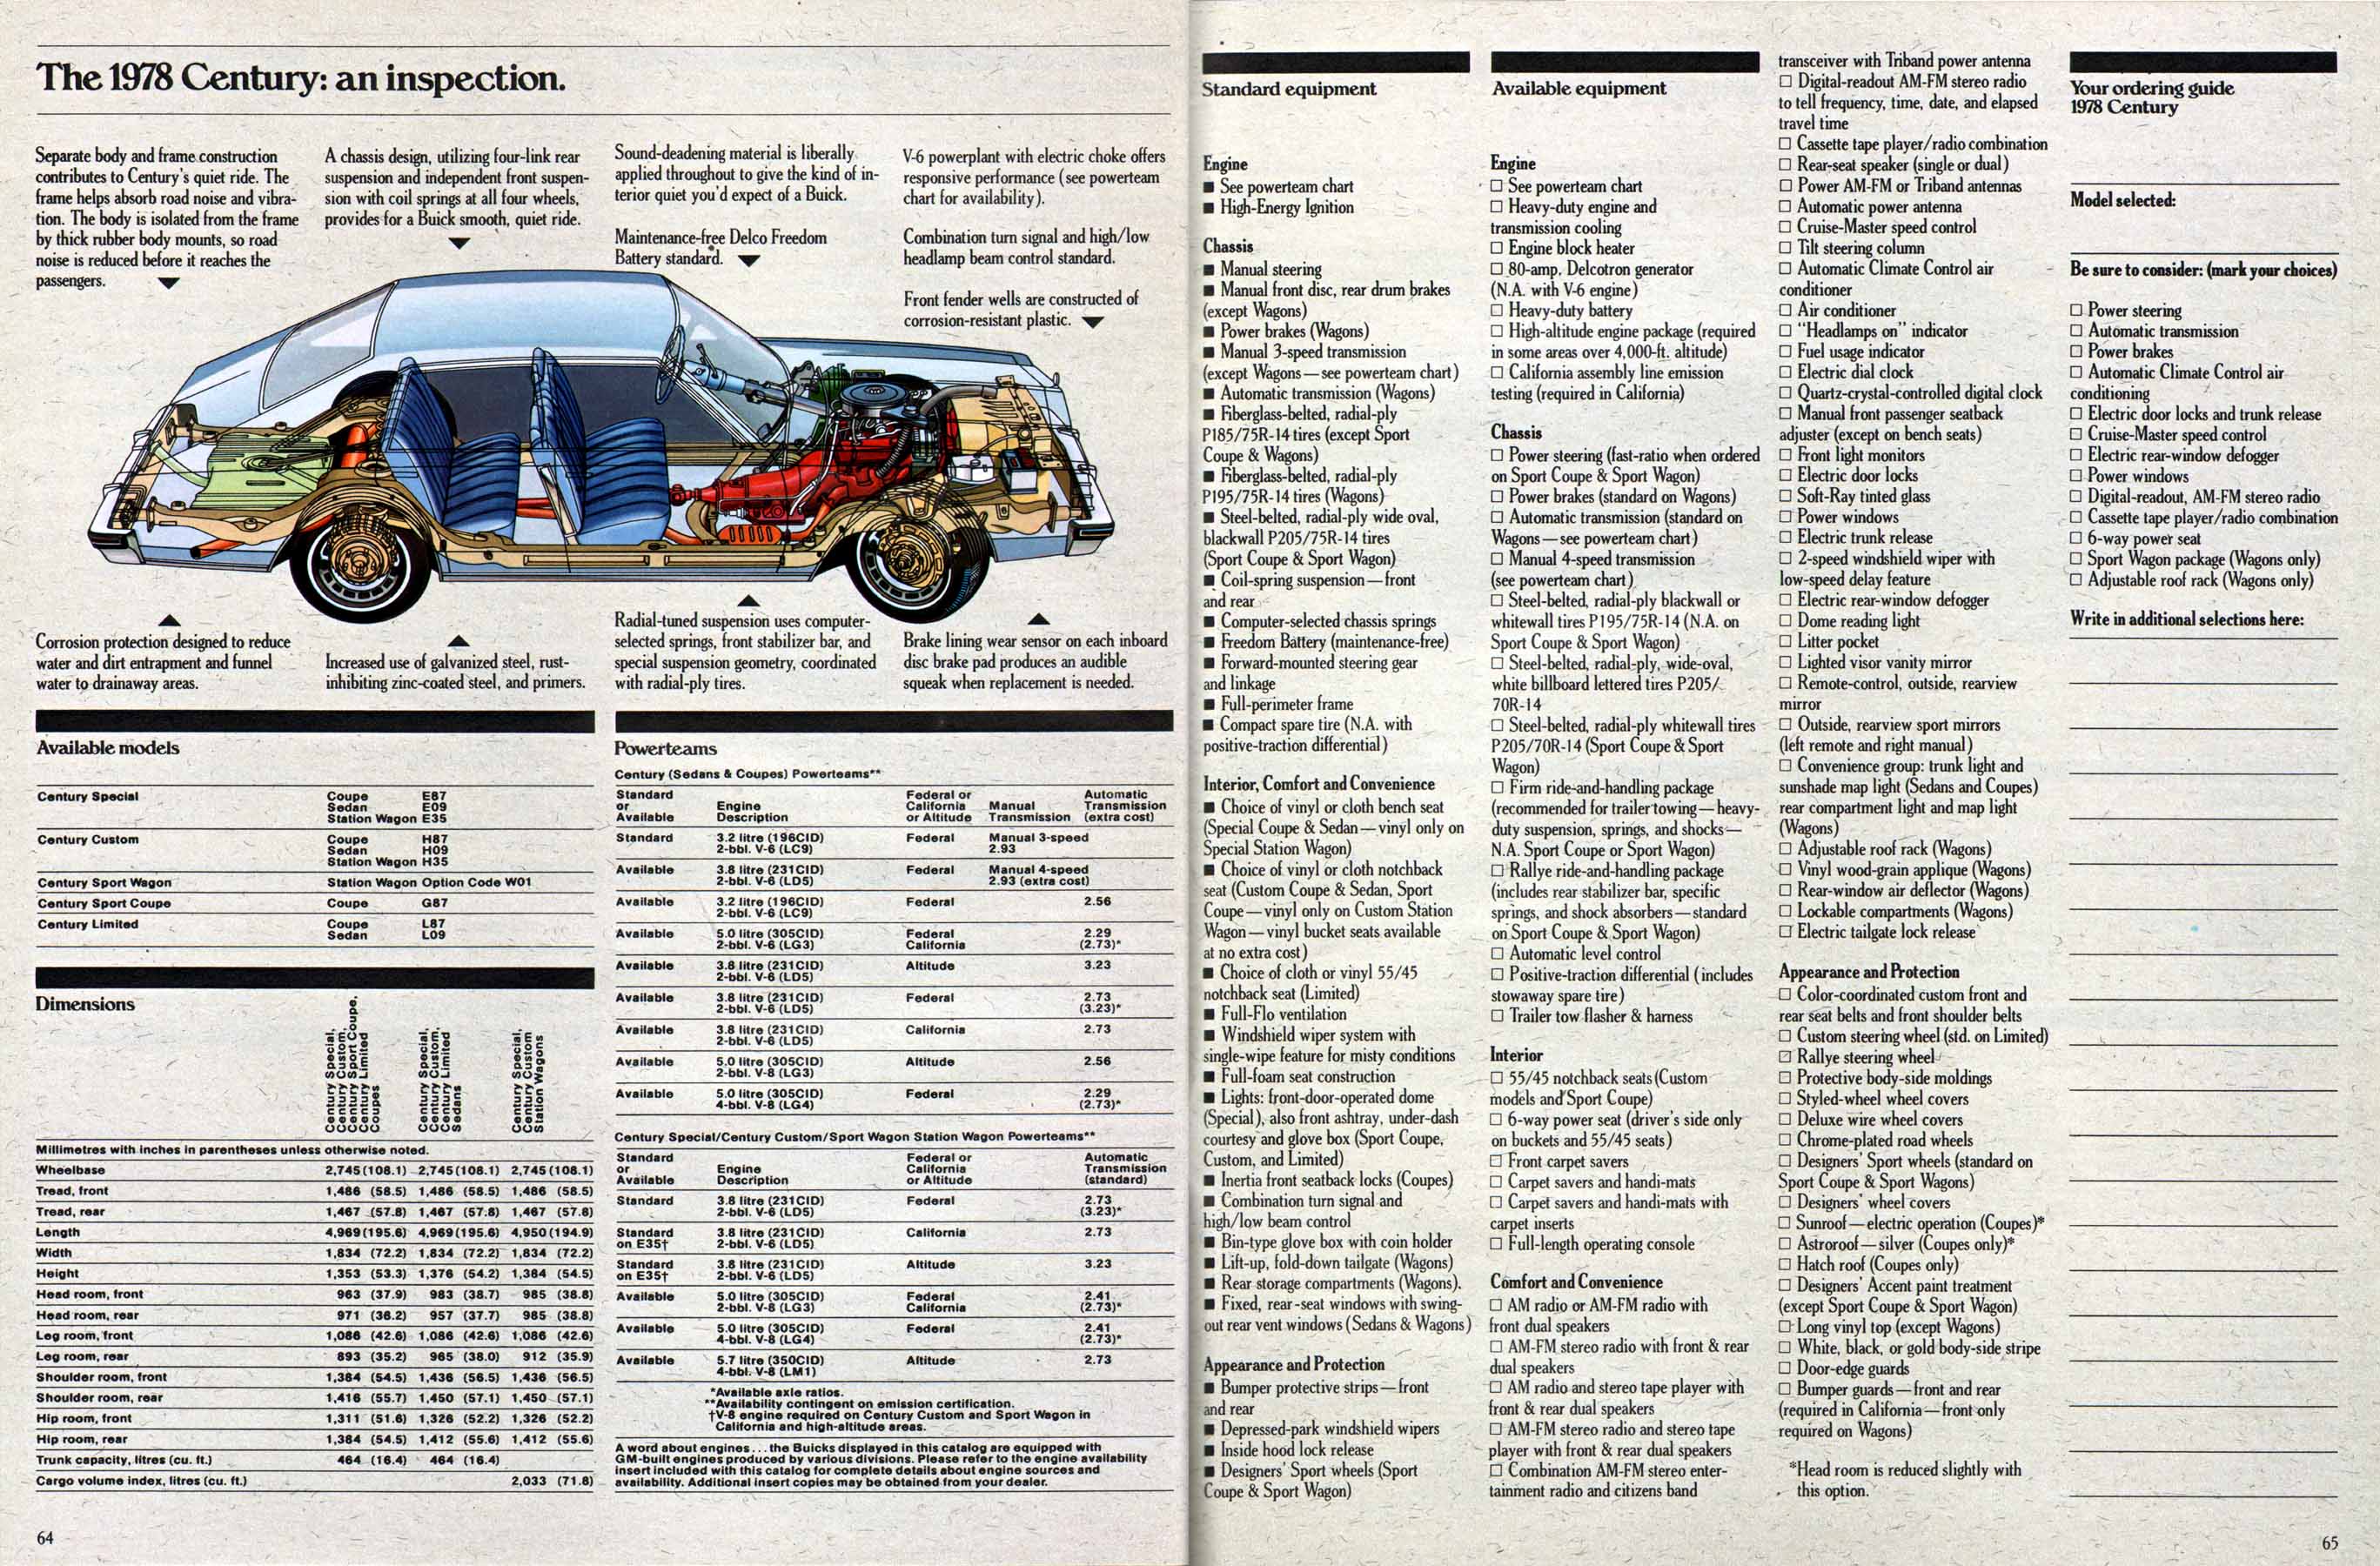 1978 Buick Full Line Prestige-64-65